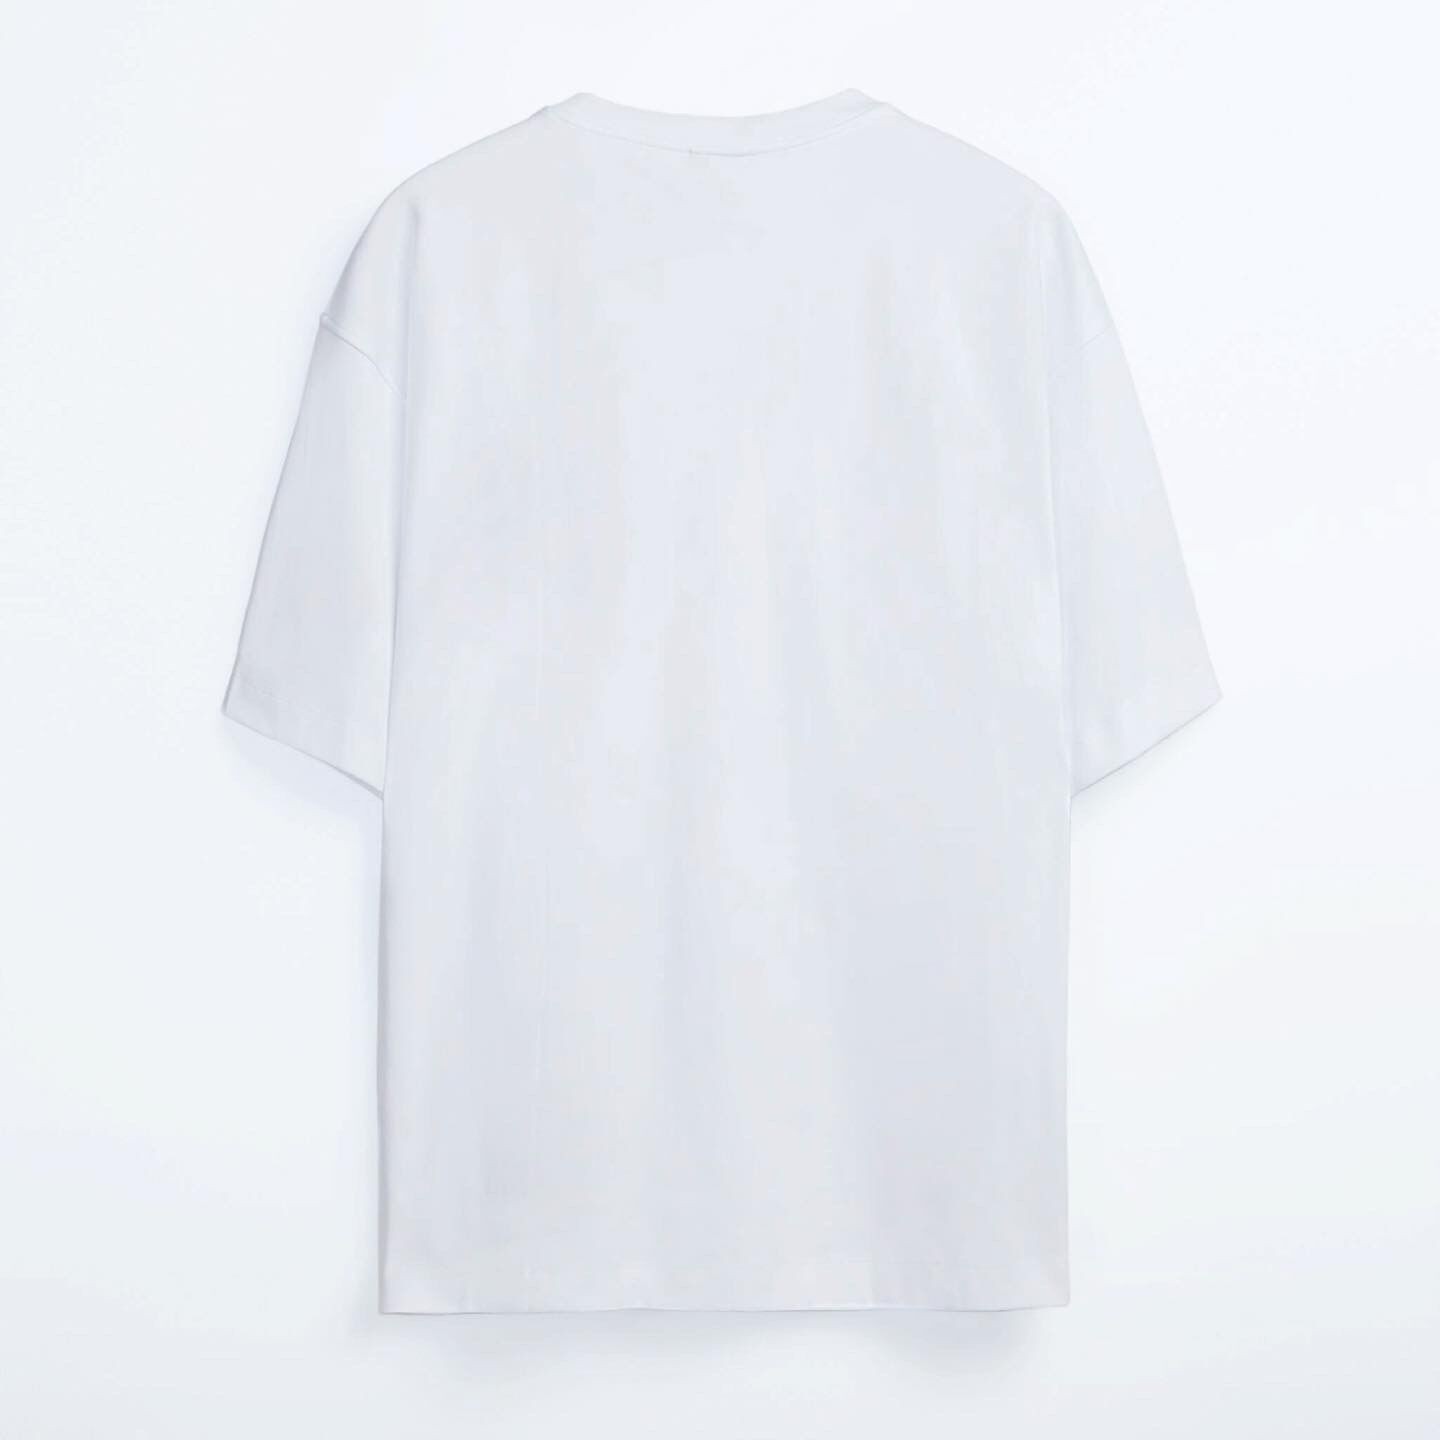 Shout Oversize Windows & Glaring Oldschool Unisex T-Shirt